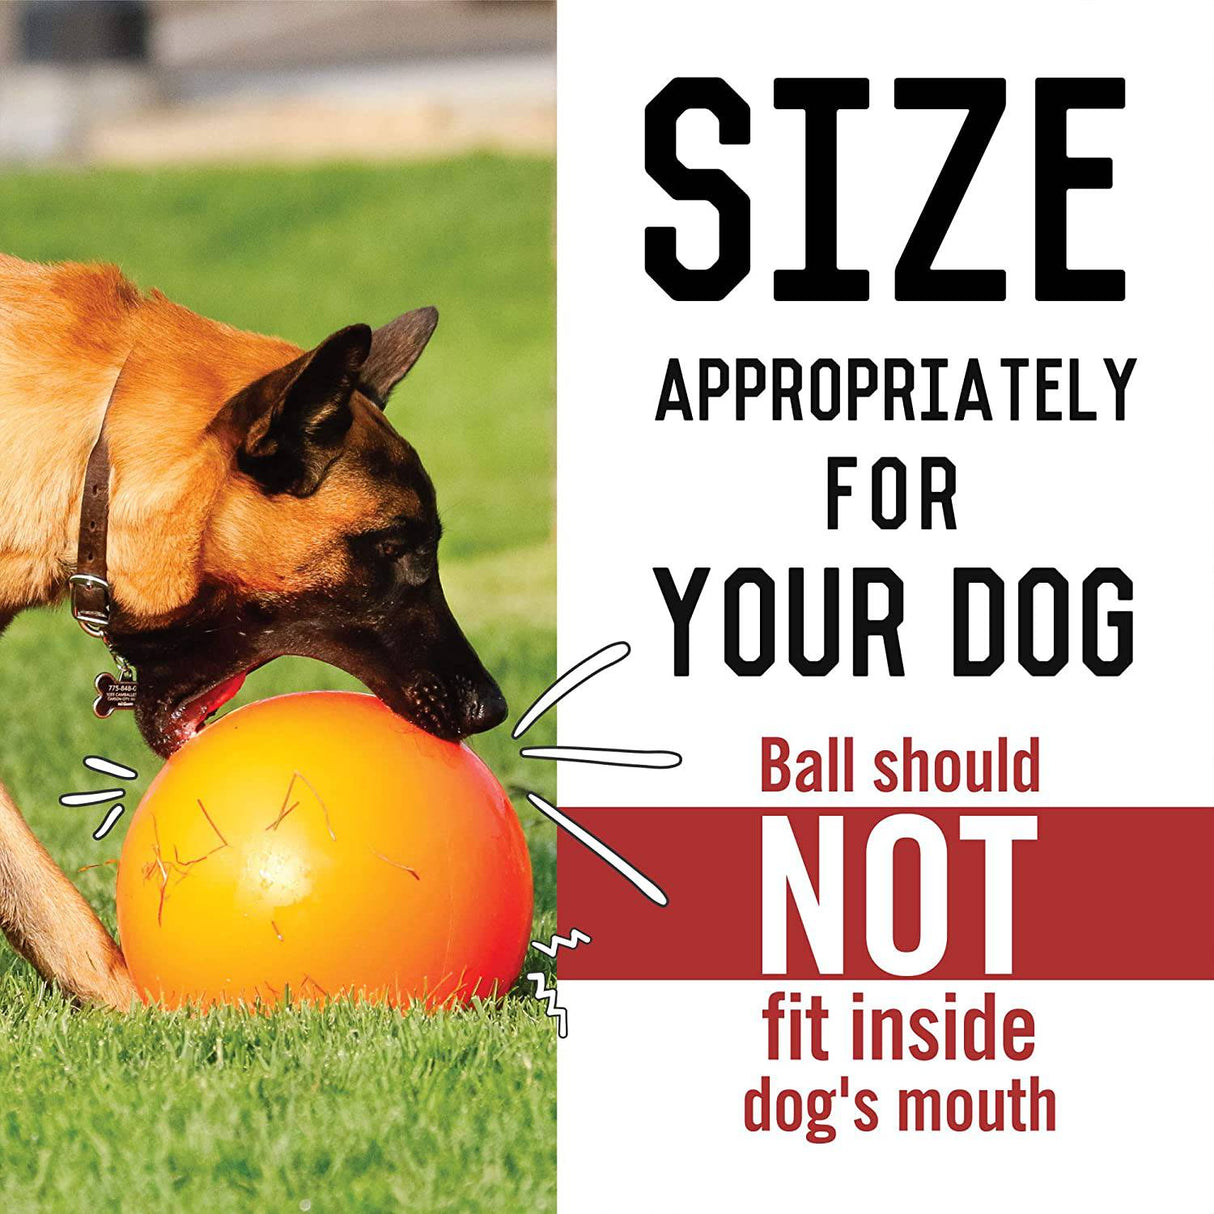 2 pelotas para perros, pelotas para perros indestructibles, pelotas para  perros, pelotas de tenis para perros